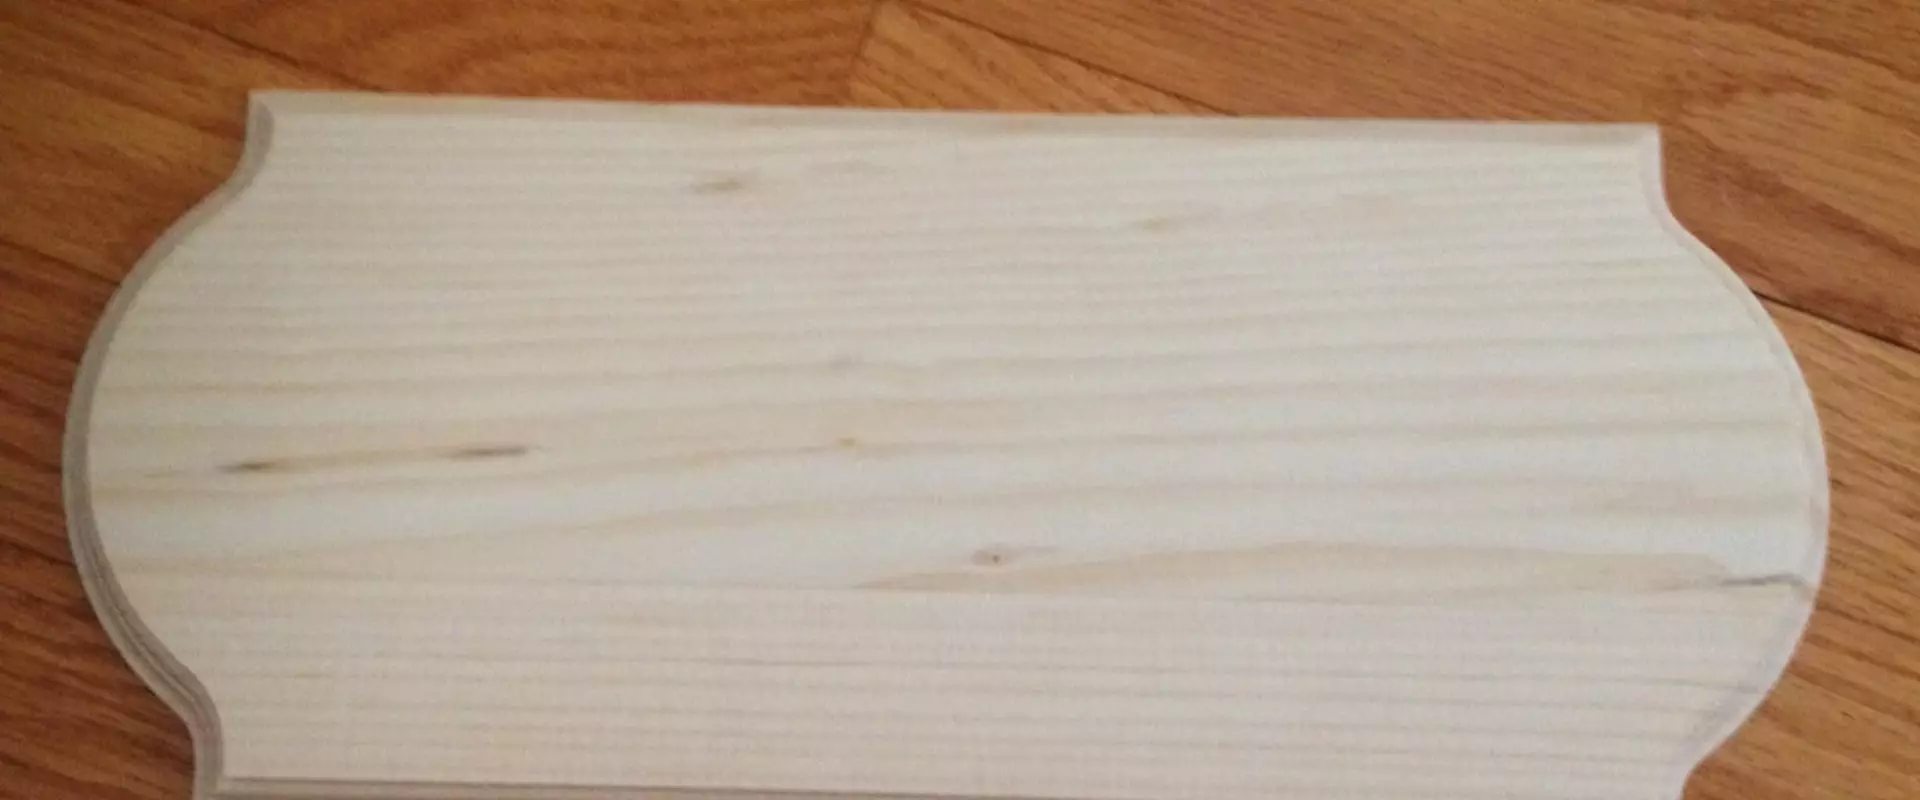 Will cricut vinyl stick to wood?